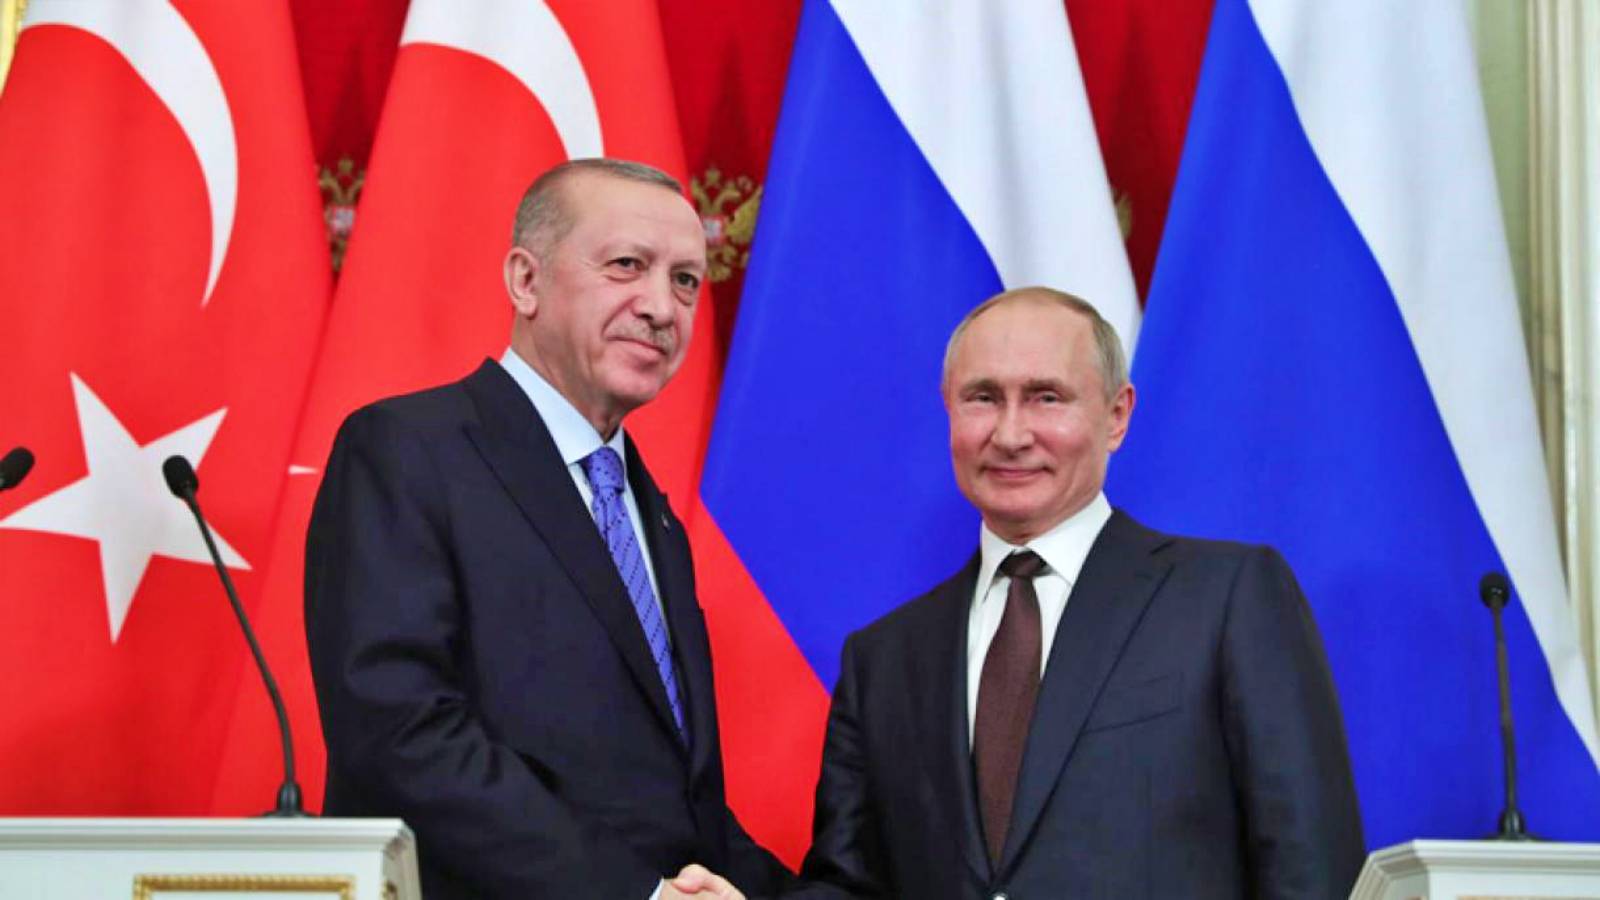 Erdogan et Poutine discutent à Sotchi de la guerre en Ukraine